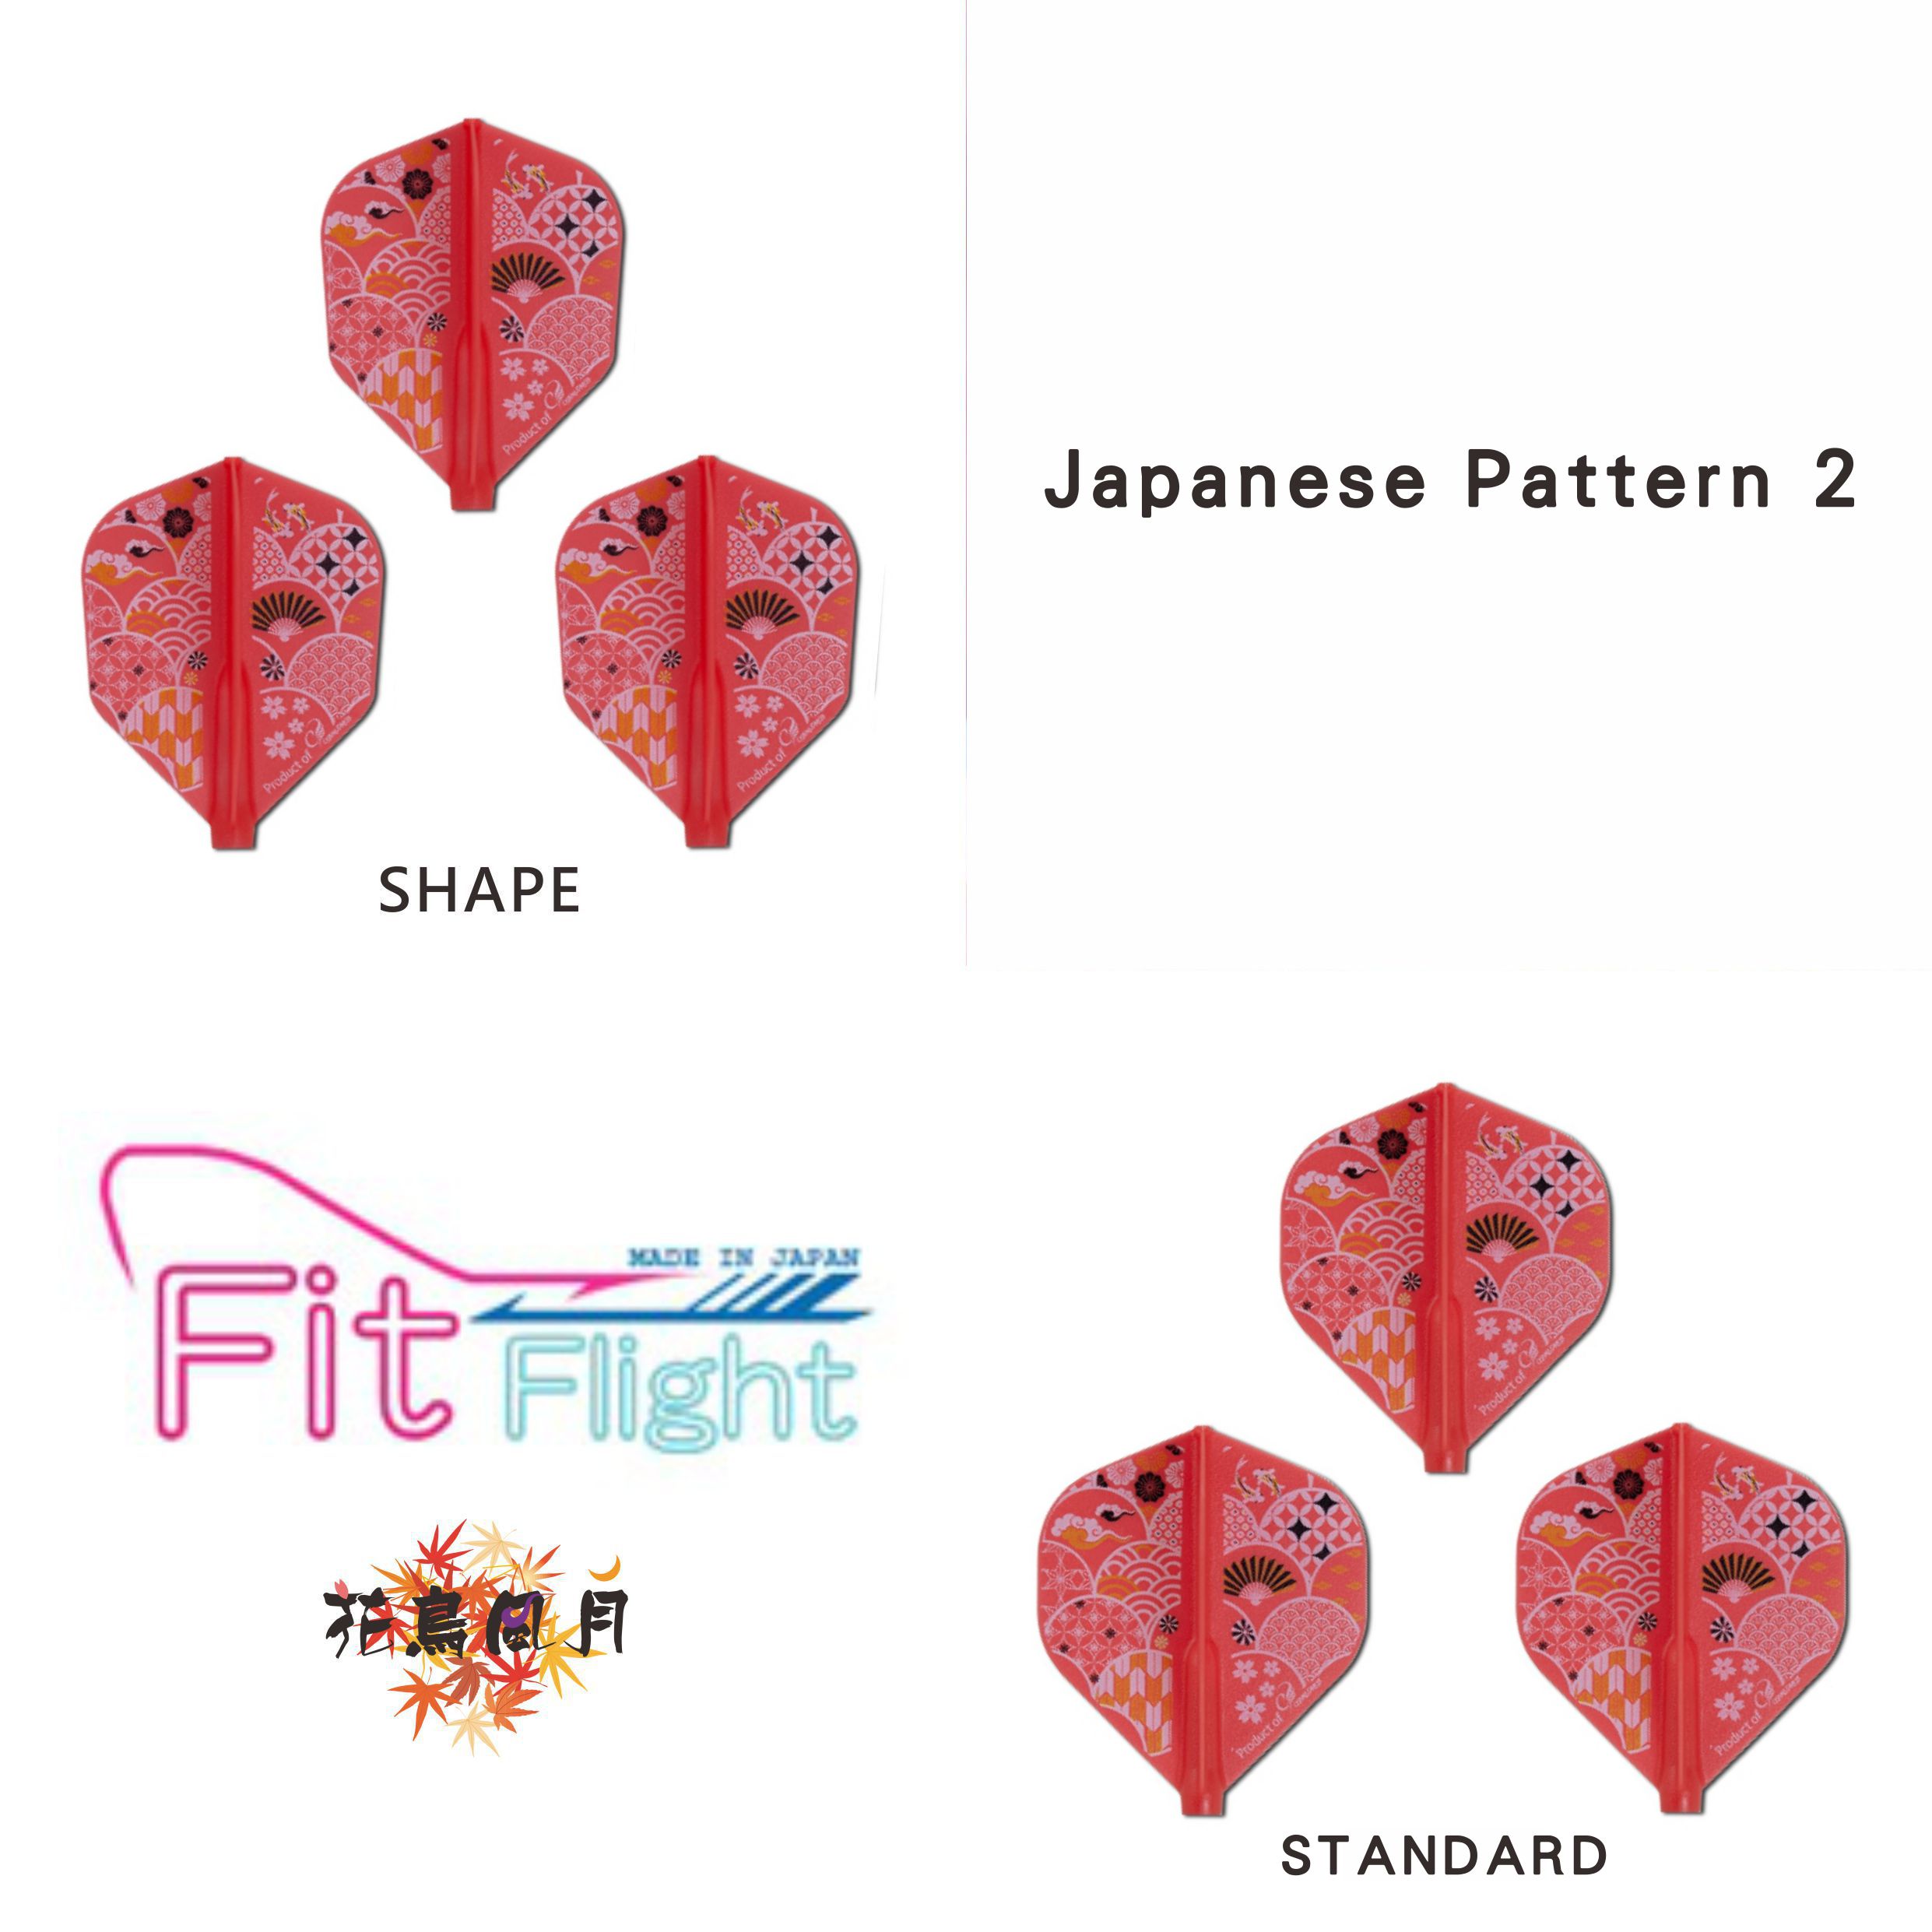 Fit-Flight-Printed-Series-Japanese-Pattern-2.jpg